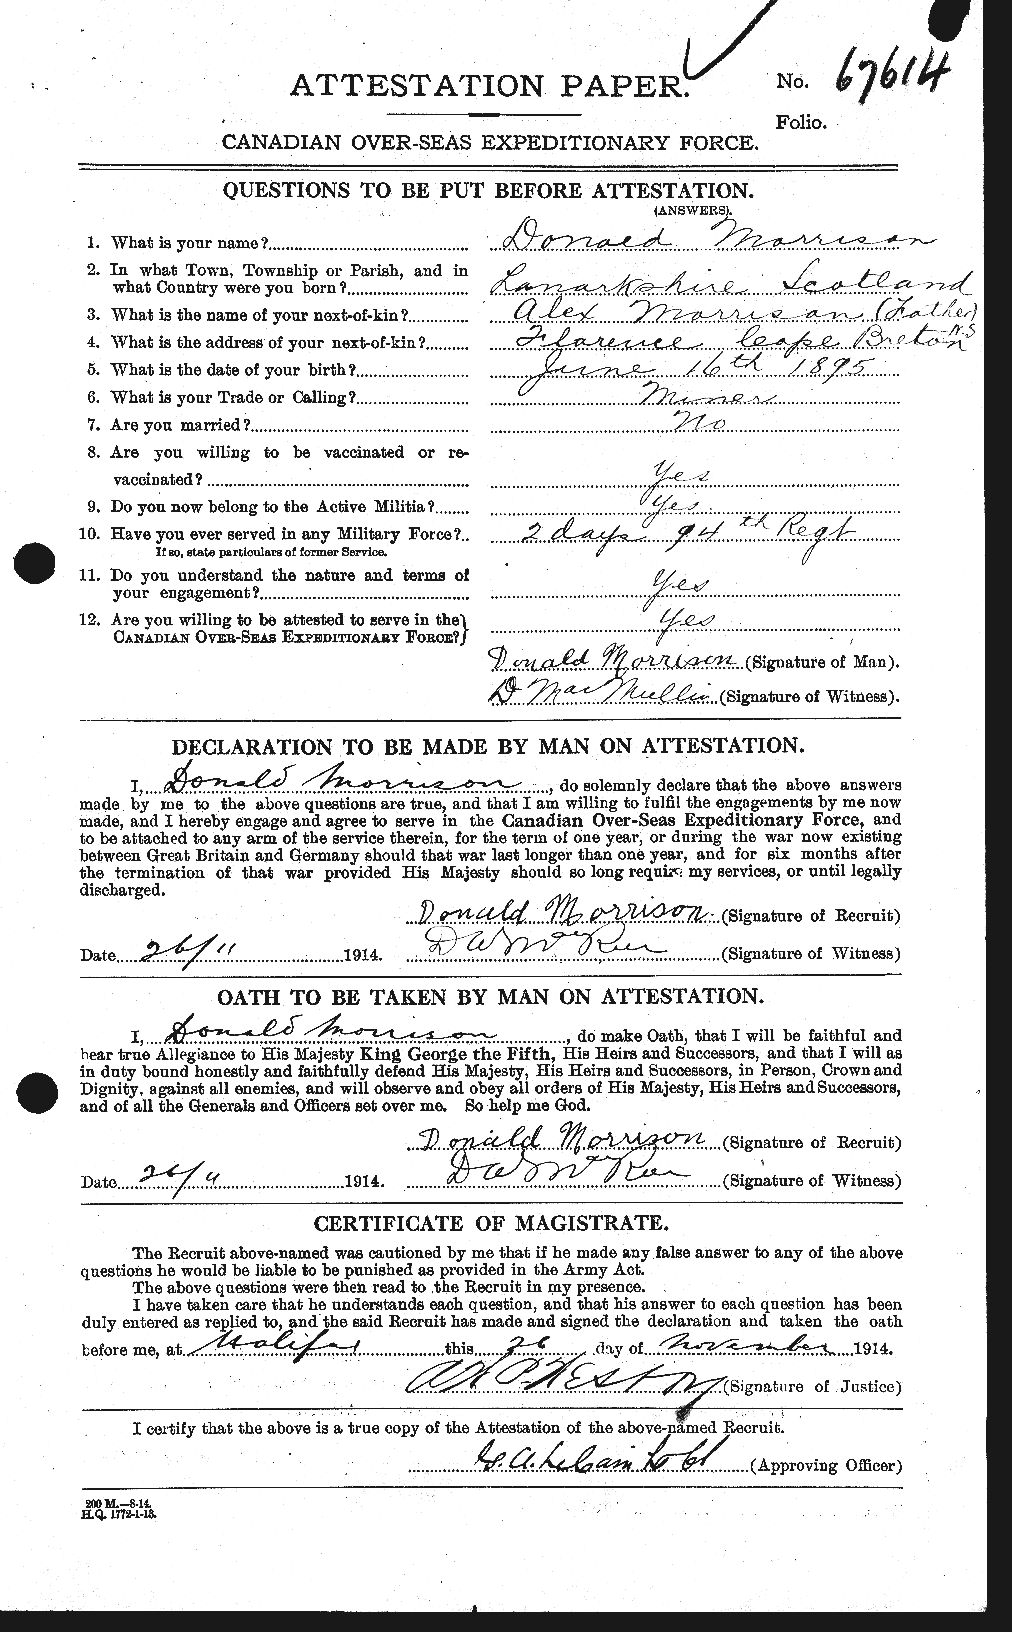 Dossiers du Personnel de la Première Guerre mondiale - CEC 505437a